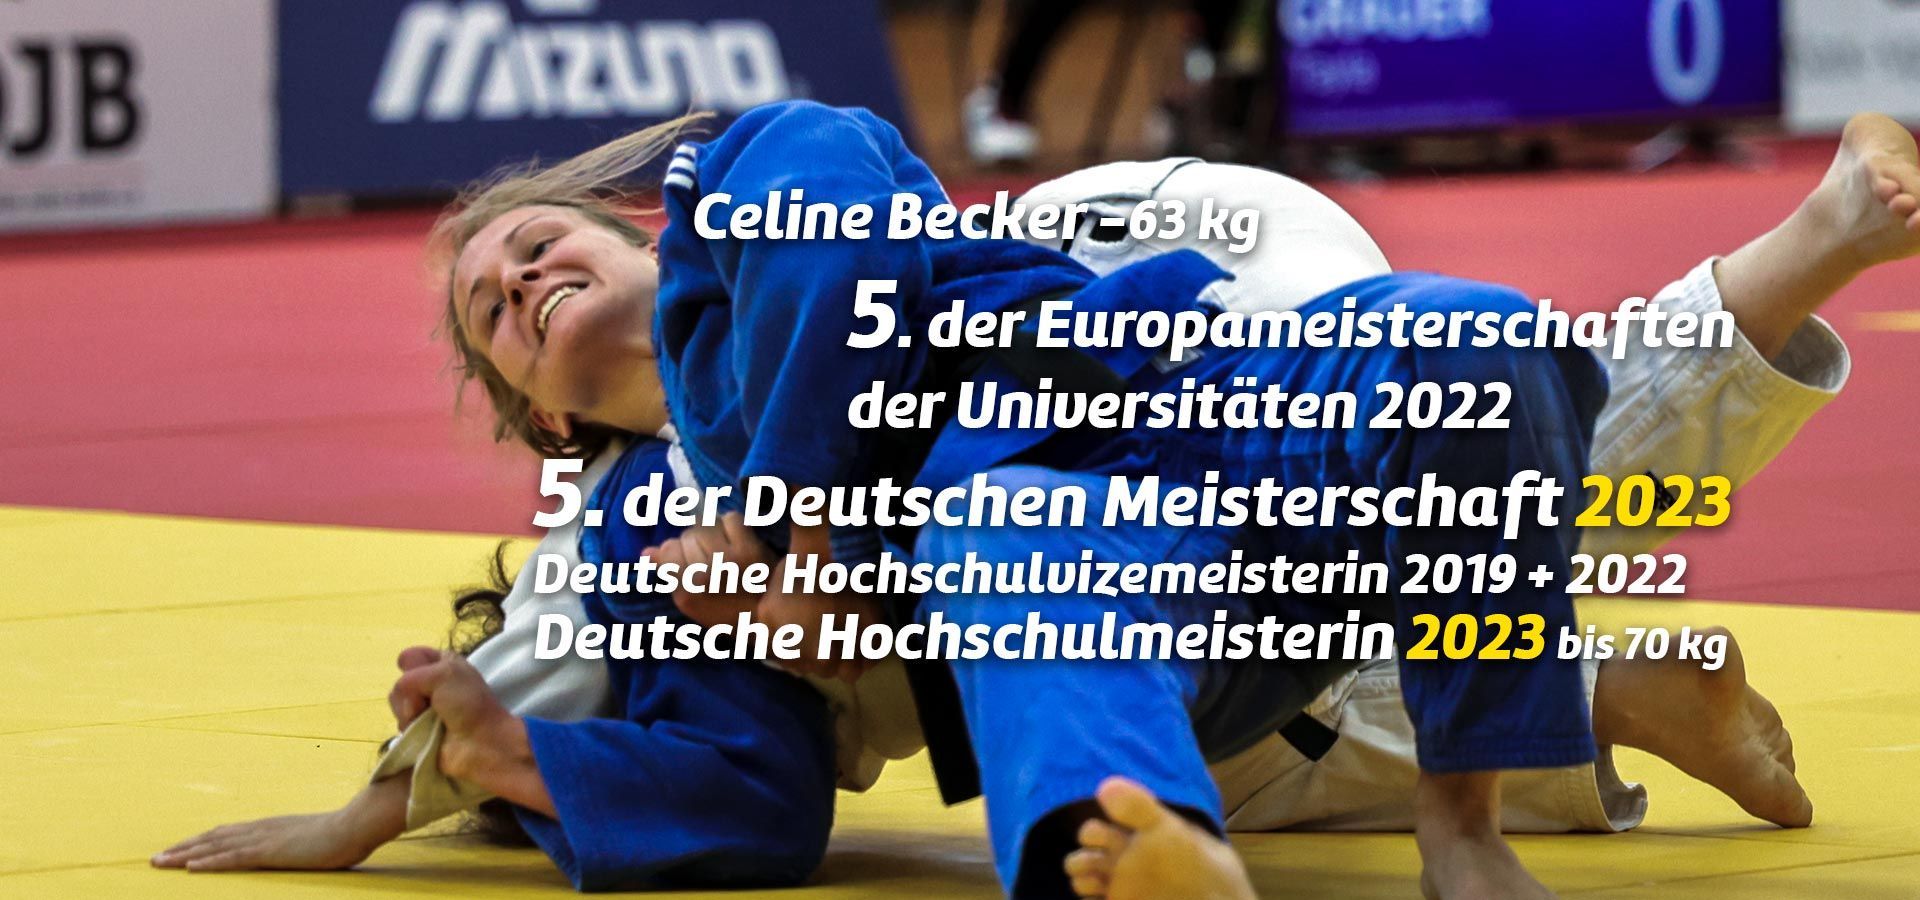 Celine Becker - Deutsche Hochschulmeisterin bis 70 kg 2023